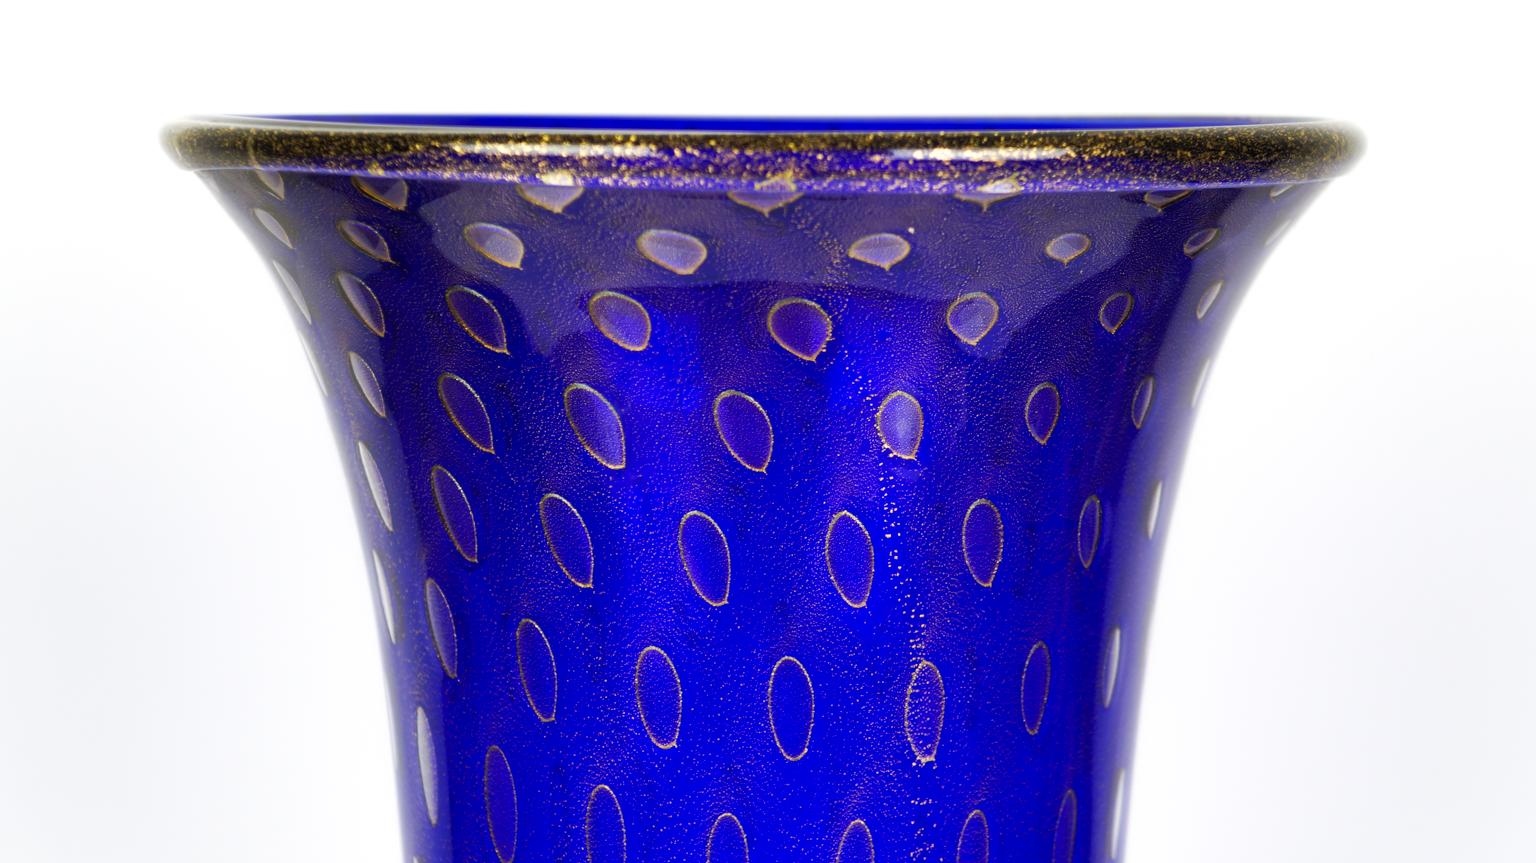 Contemporary Art Deco Blue Gold Design Italian Art Glass Vase by Stefano Mattiello For Sale